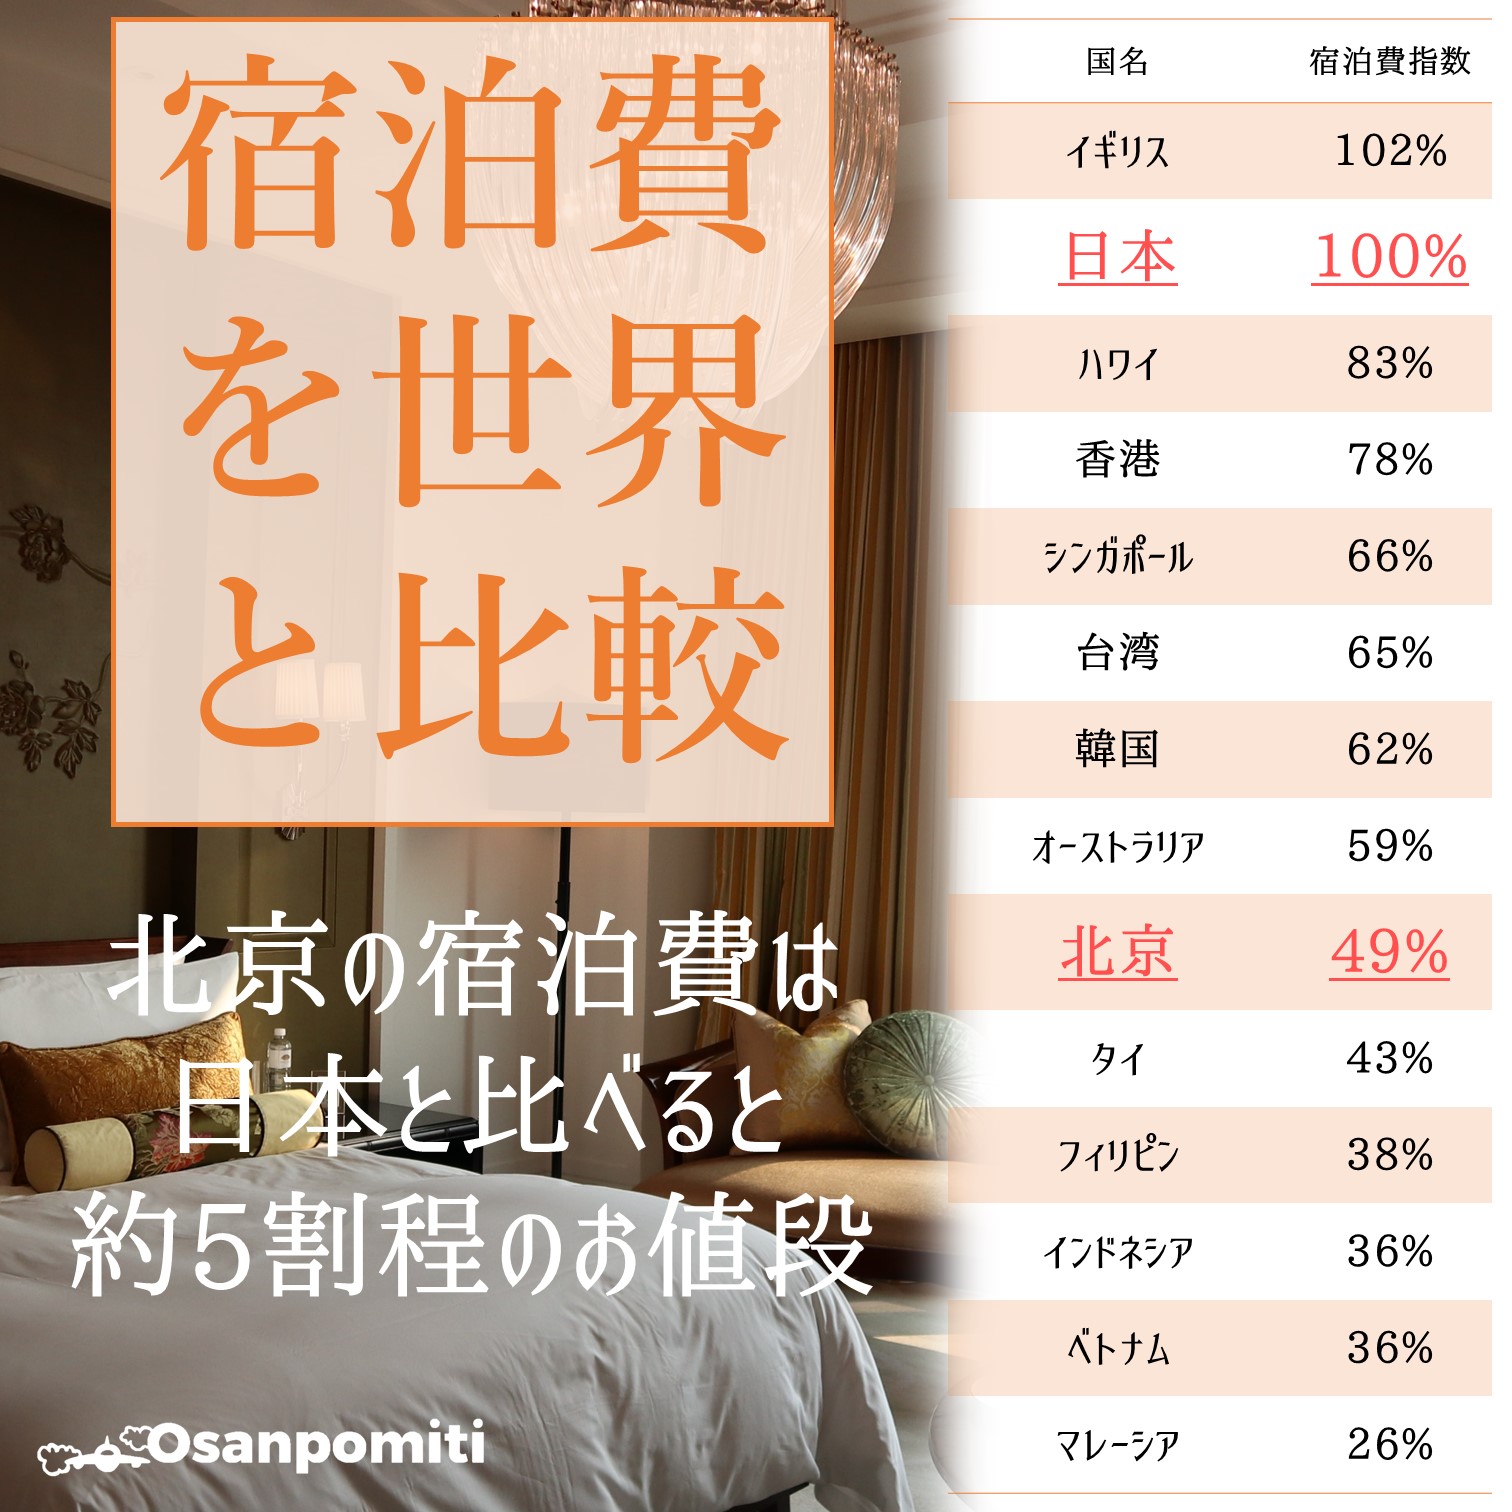 北京の宿泊費を世界と比較